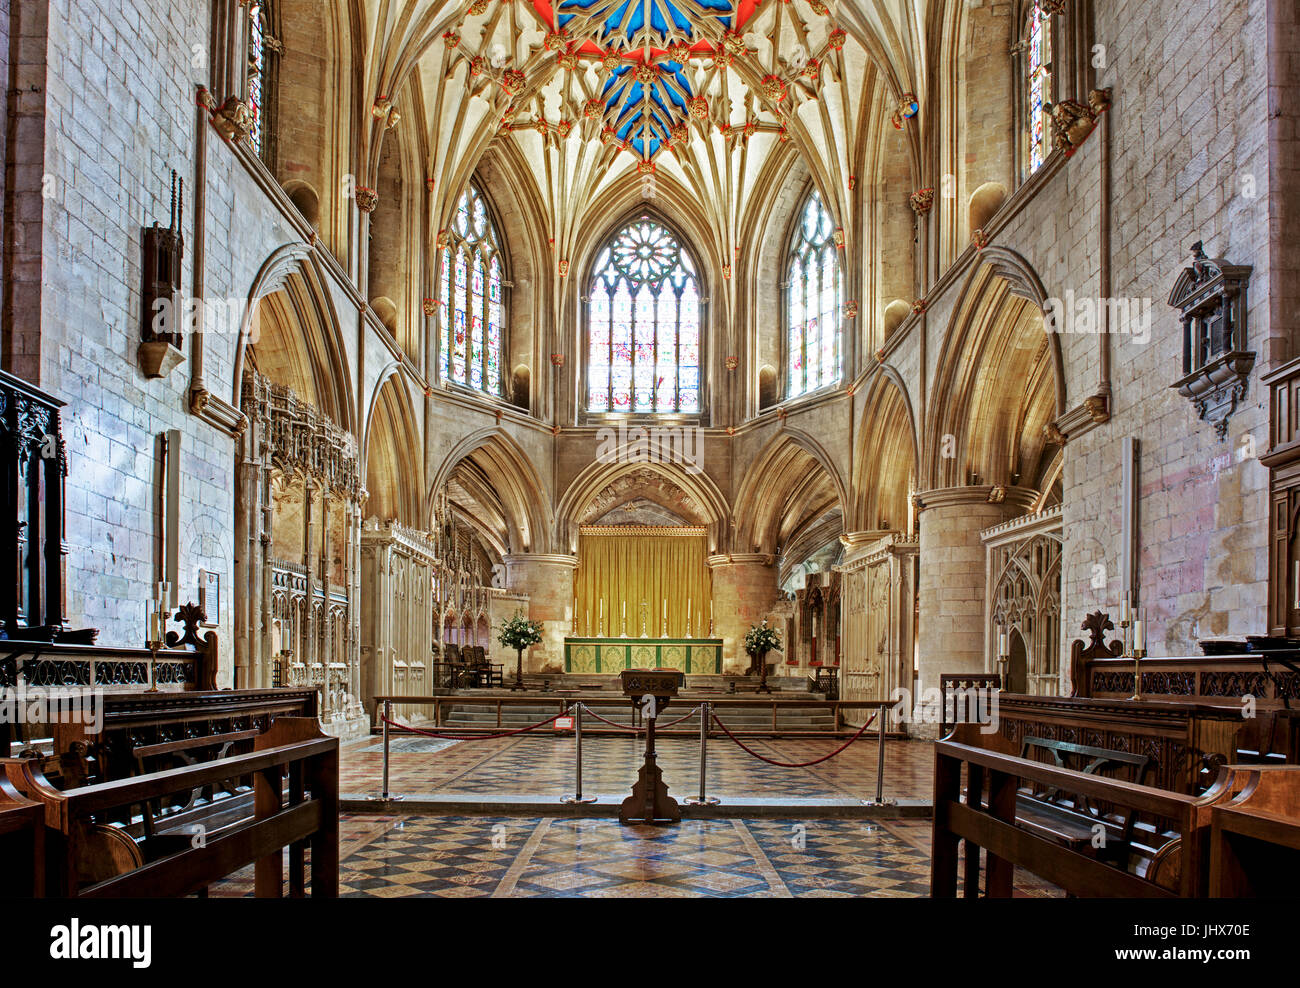 Interior of Tewkesbury Abbey, Gloucestershire, England UK Stock Photo